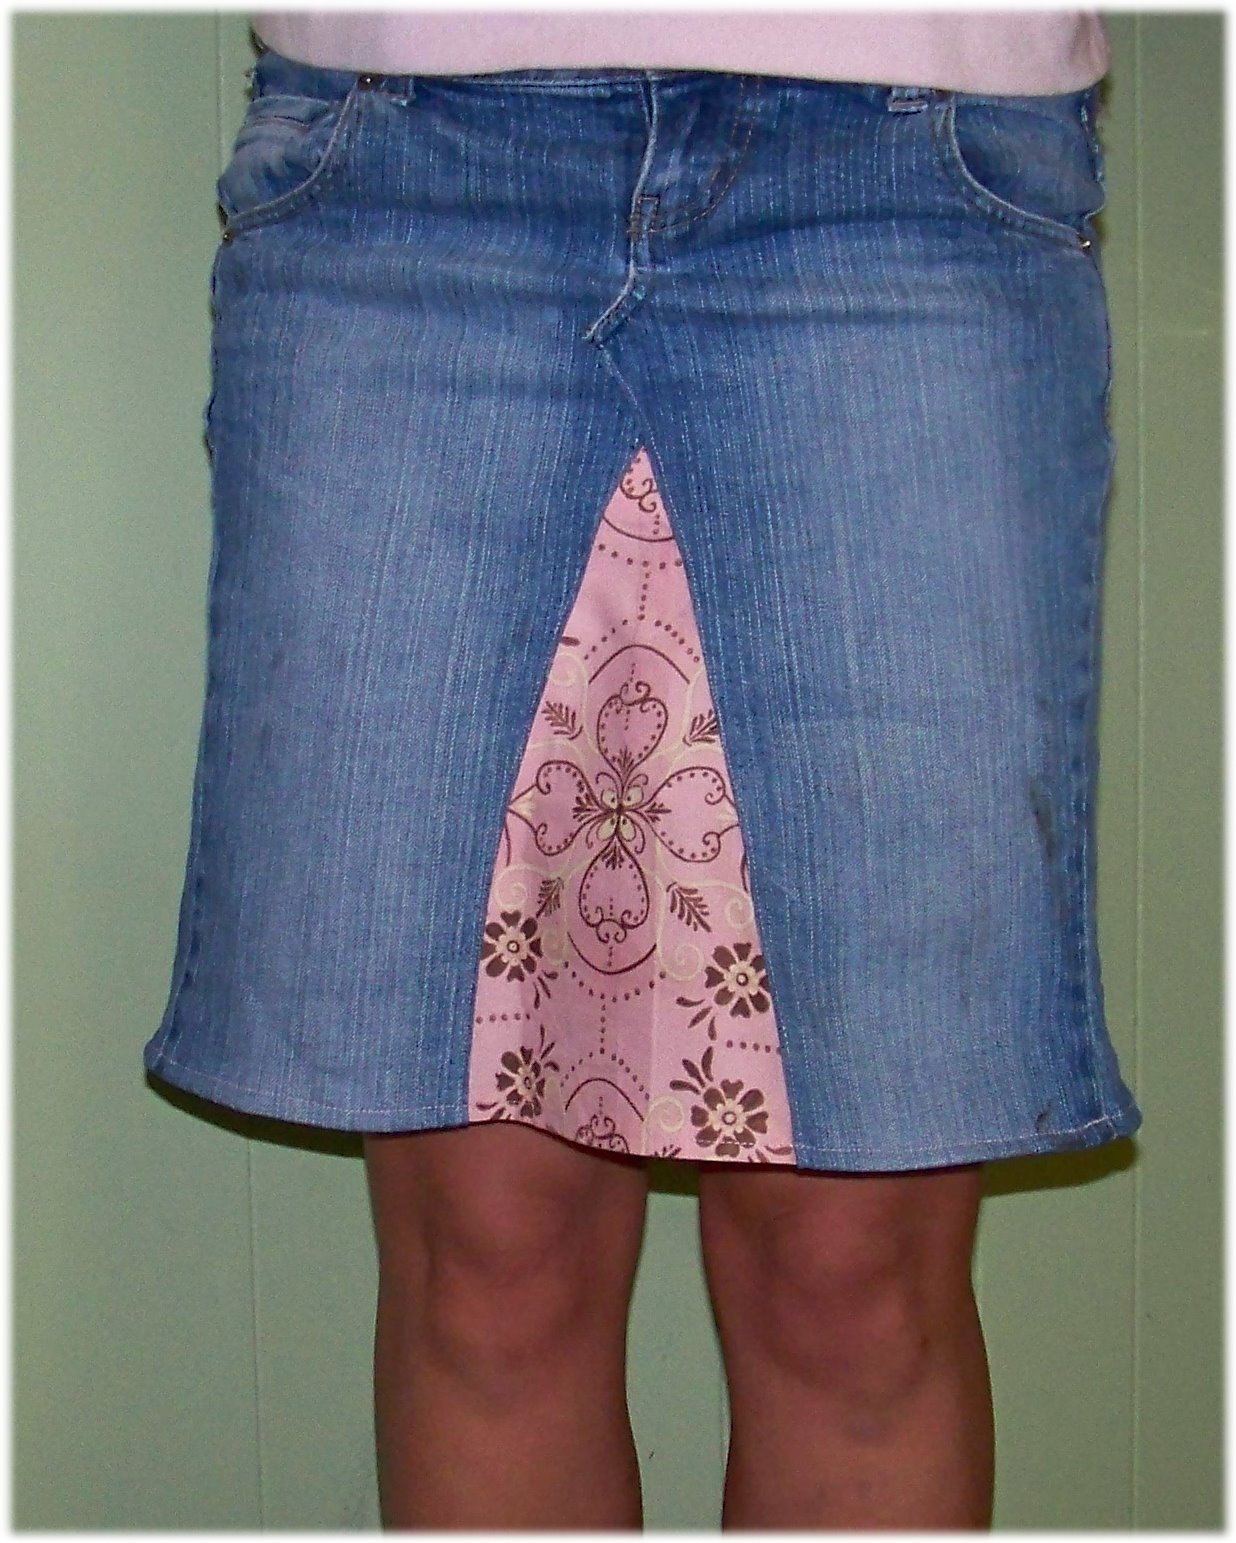 Pants Into Skirt 55